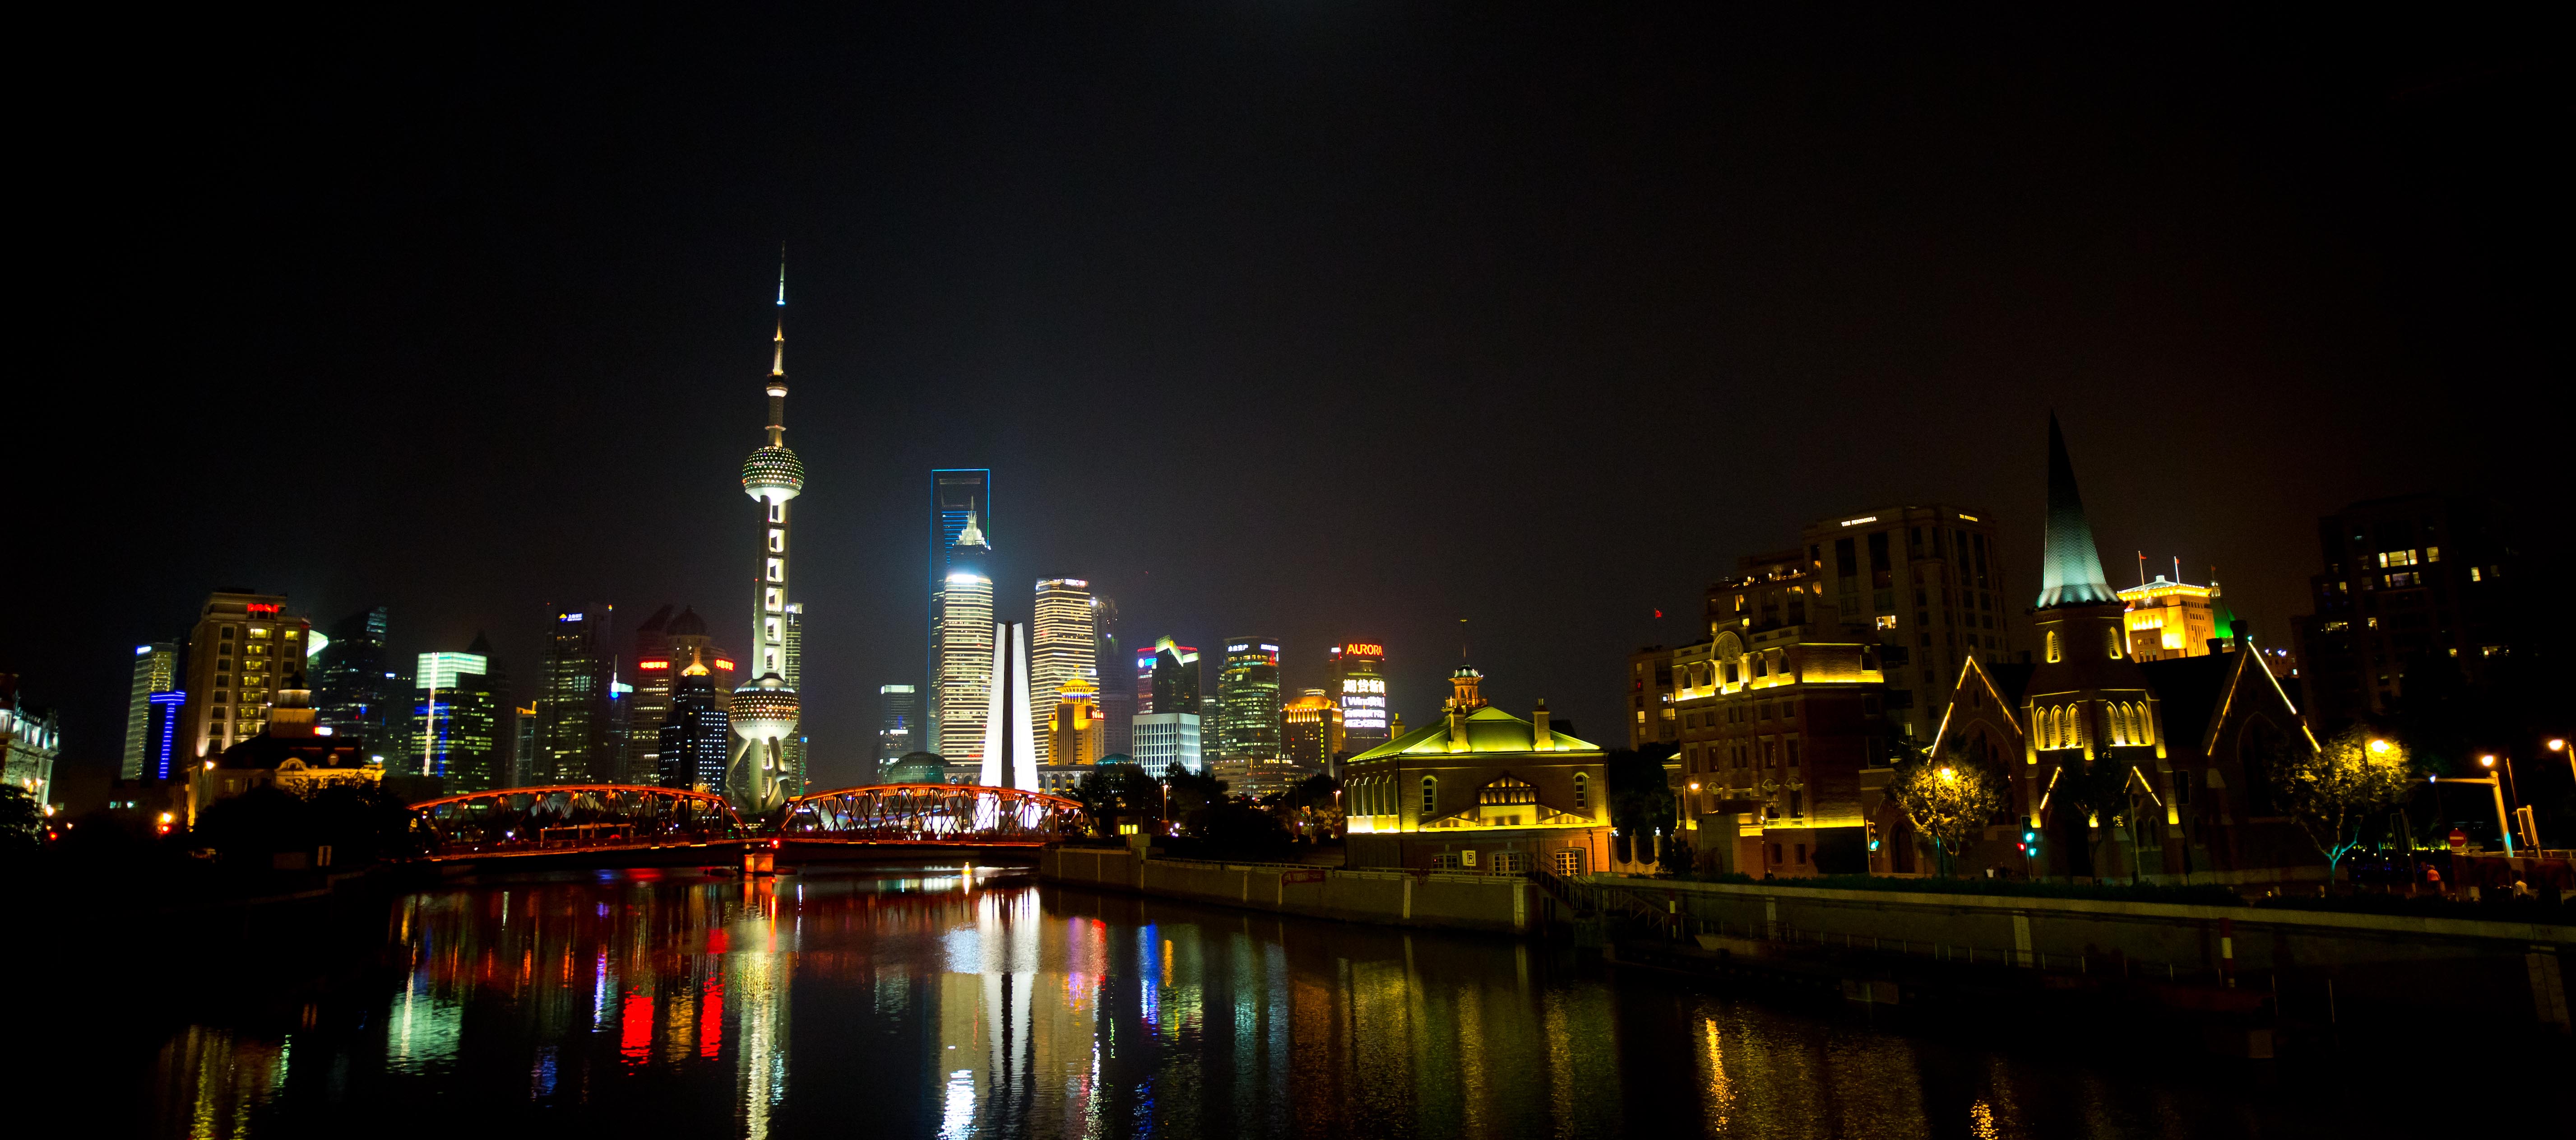 Resultado de imagem para shanghai night